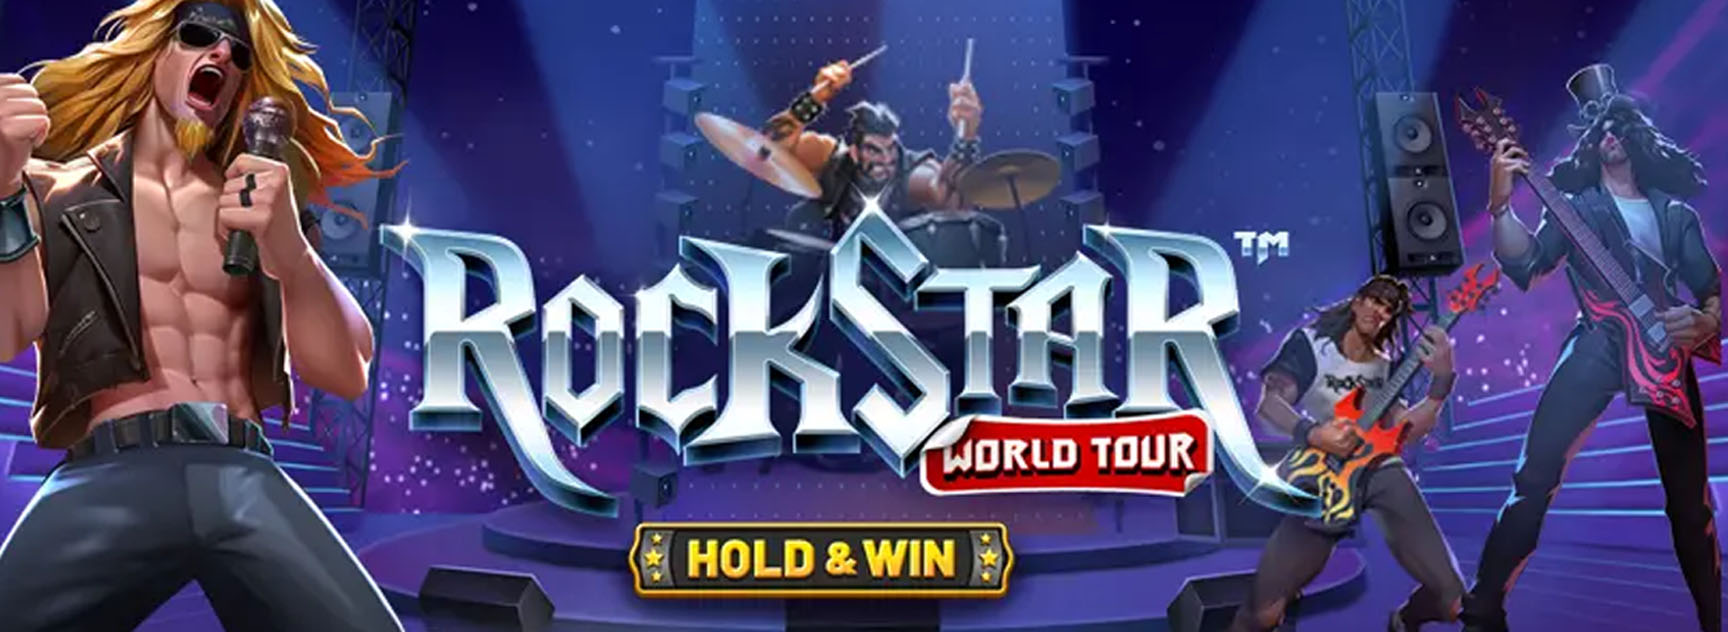 rockstar world tour (1)